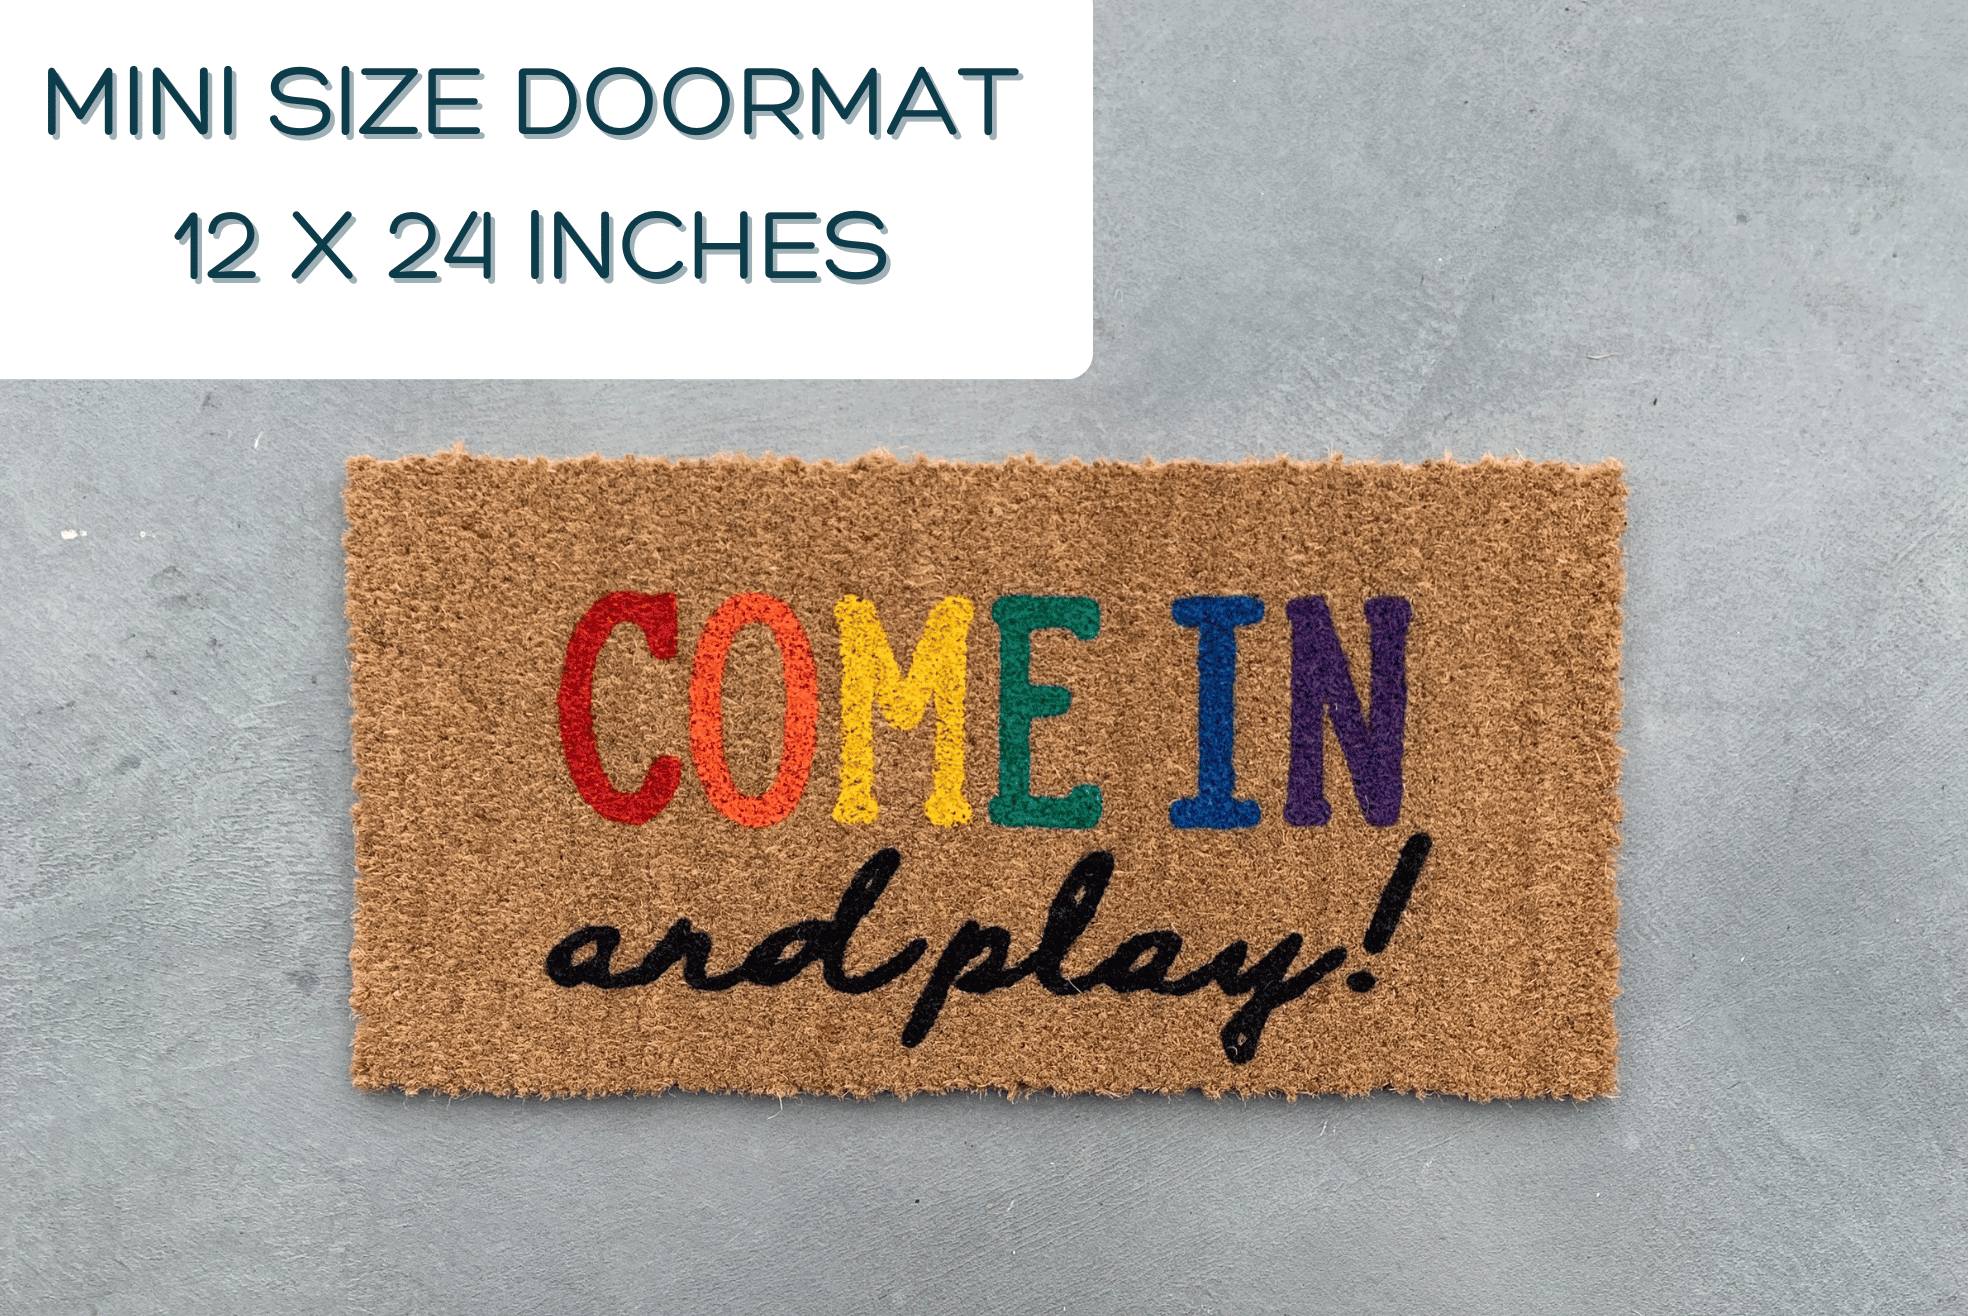 Playhouse Doormat, Come in and Play Doormat, Mini Doormat, Small